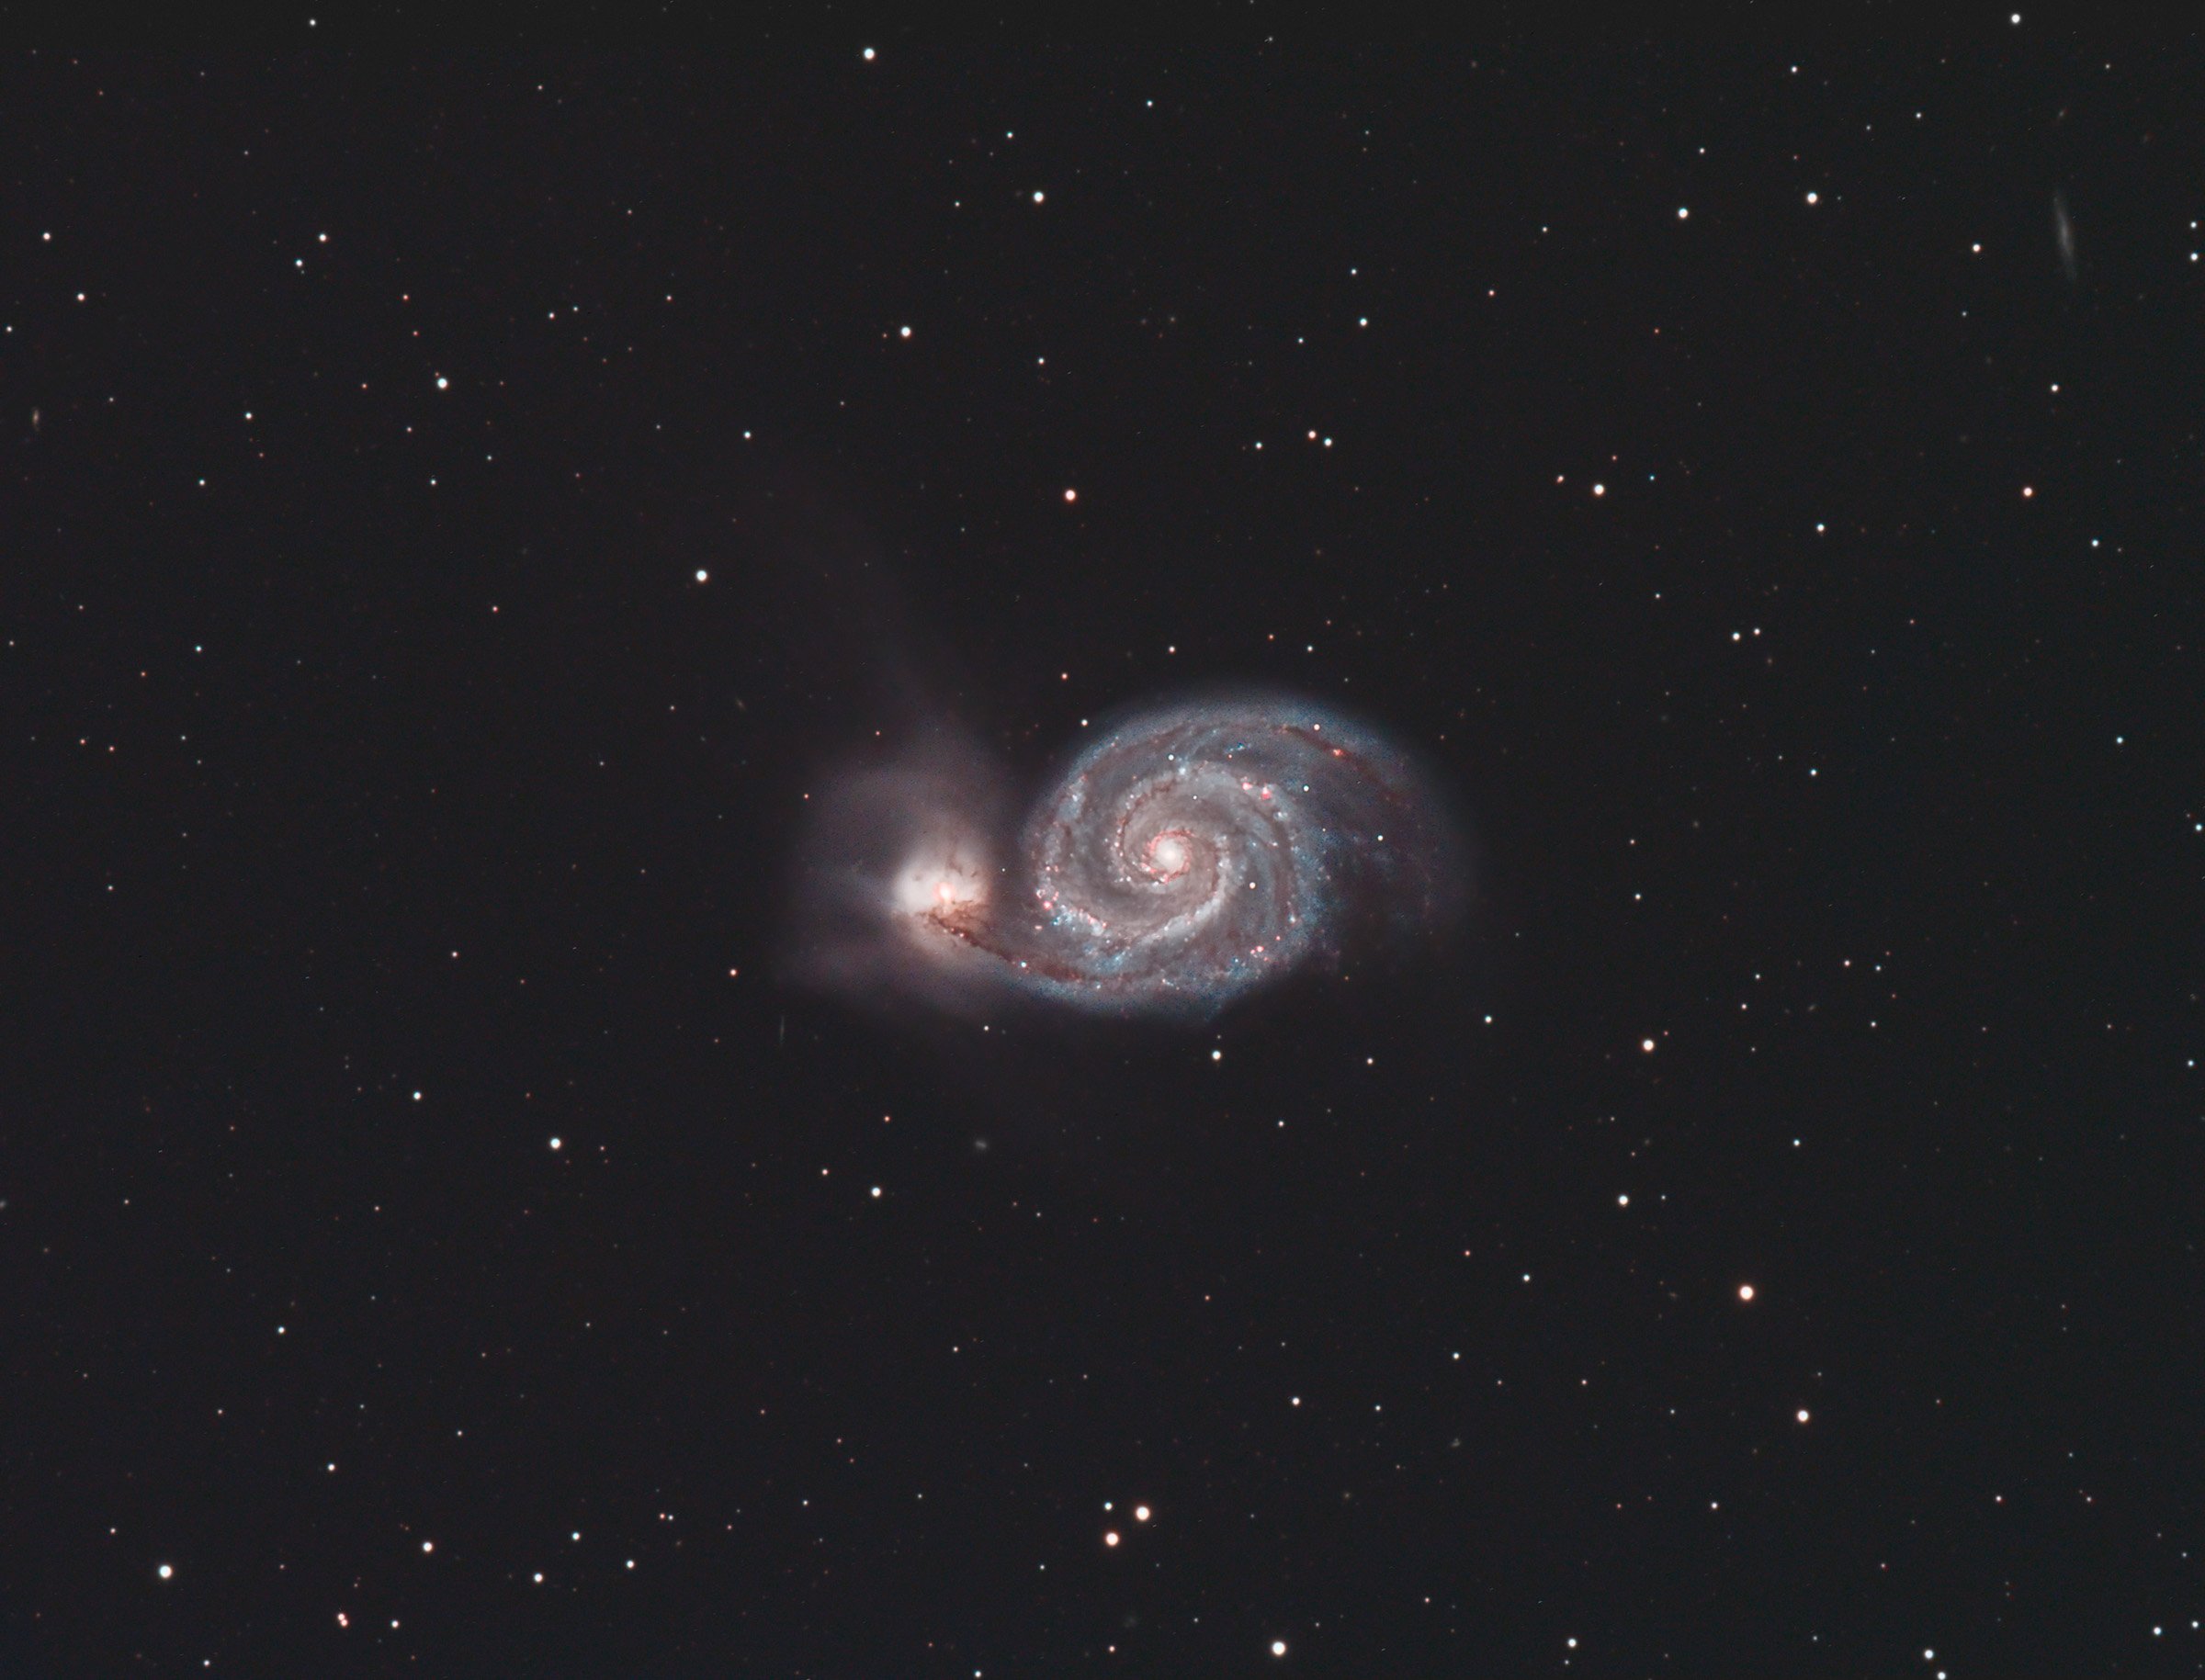 M51 Whirlpool Galaxy aka Lord Rosse's Nebula